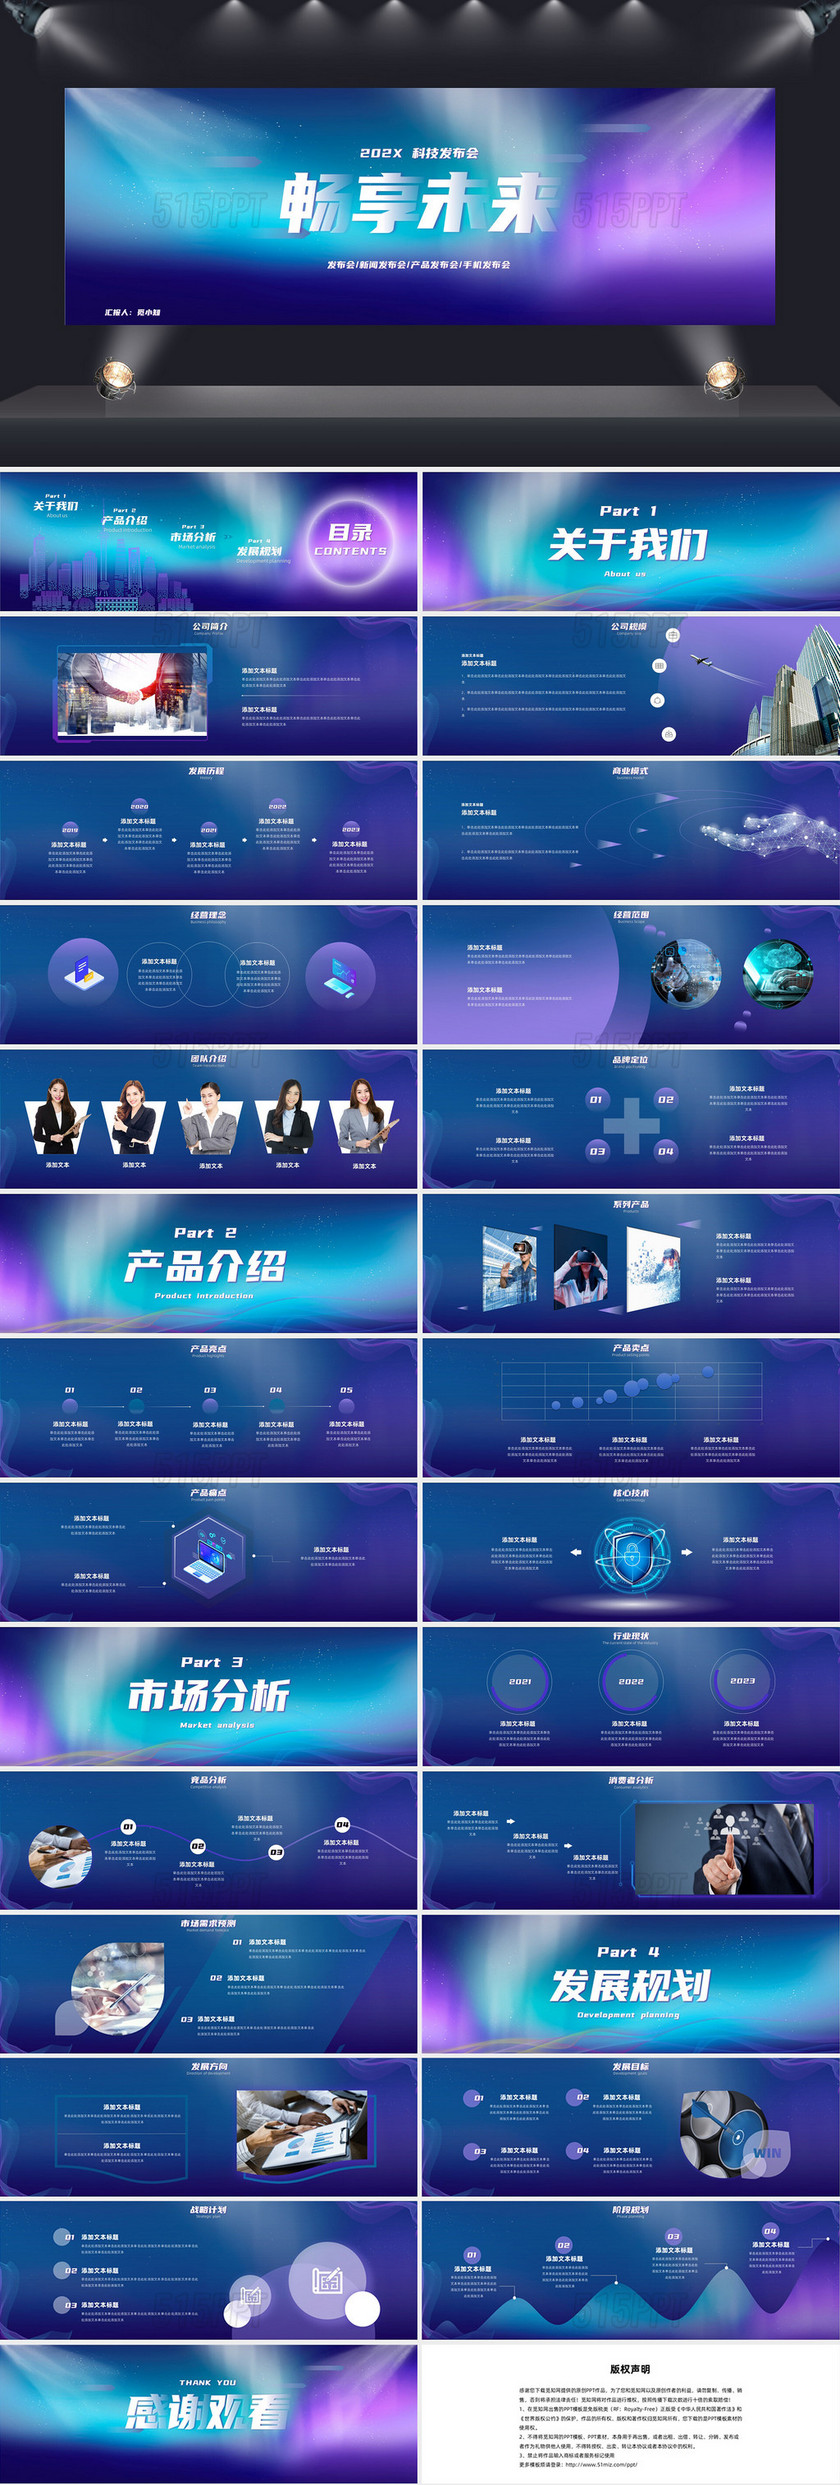 蓝色紫色炫光科技畅享未来手机发布会产品发布PPT